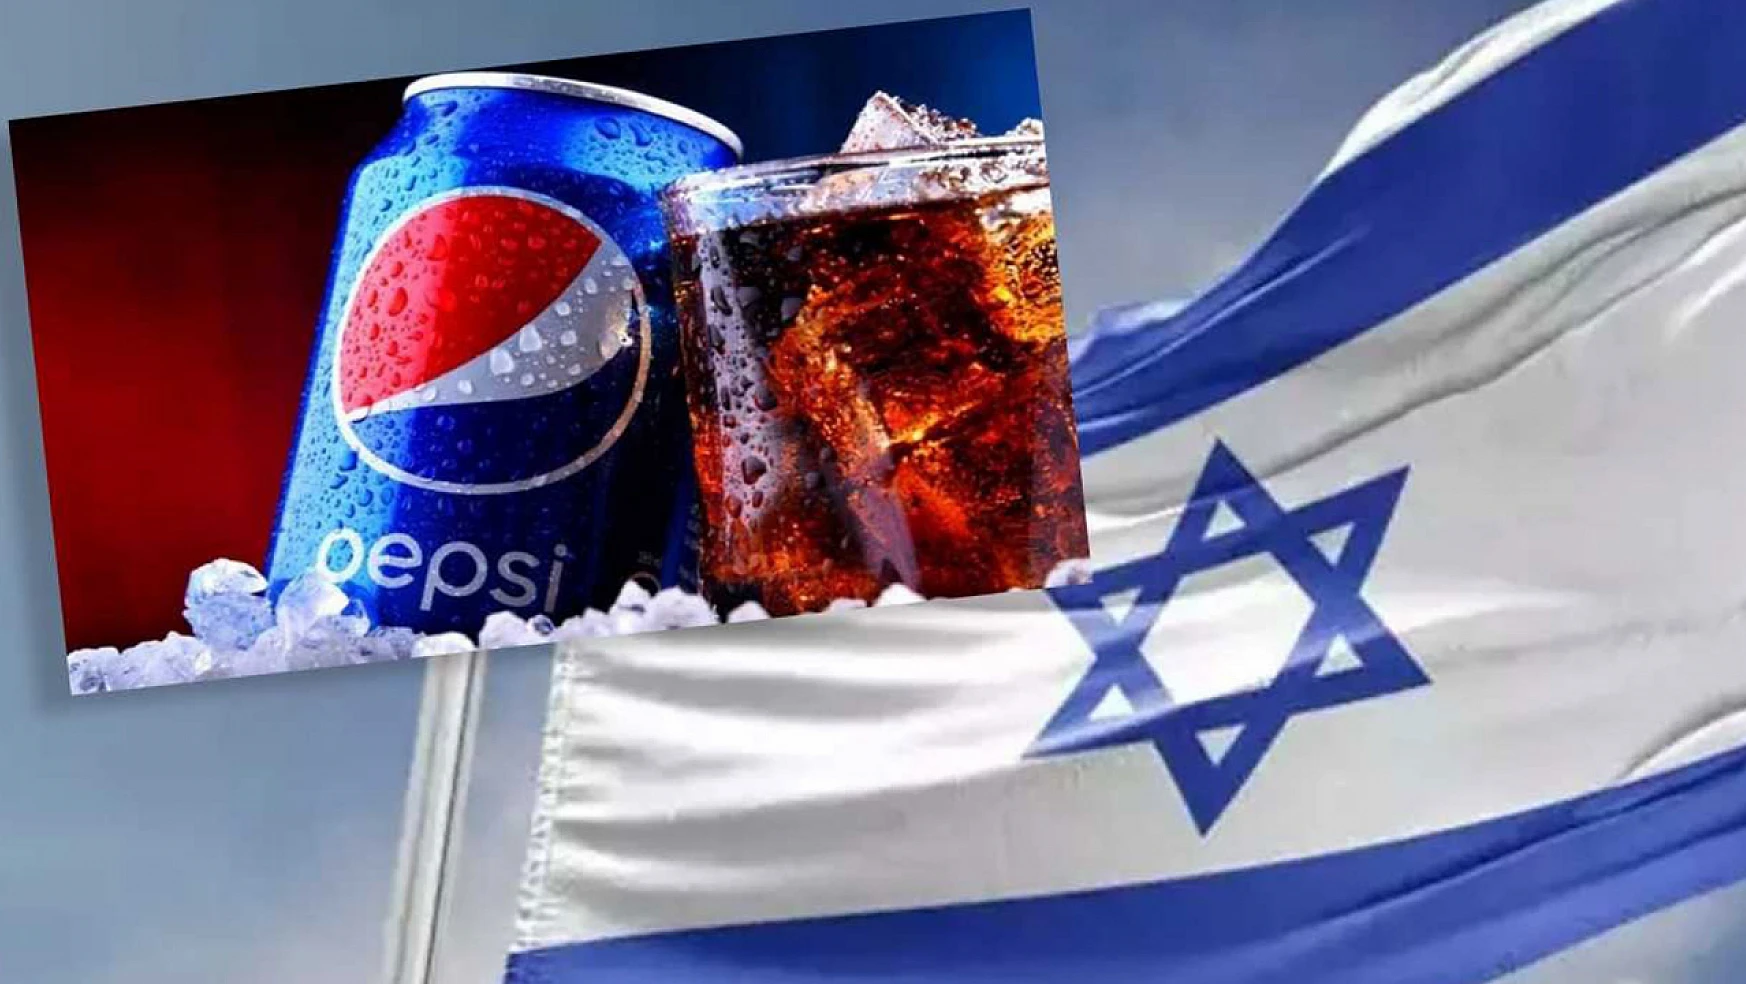 Pepsi Cola İsrail ürünü mü? Boykot listesi açıklandı! Bu iki ürün...